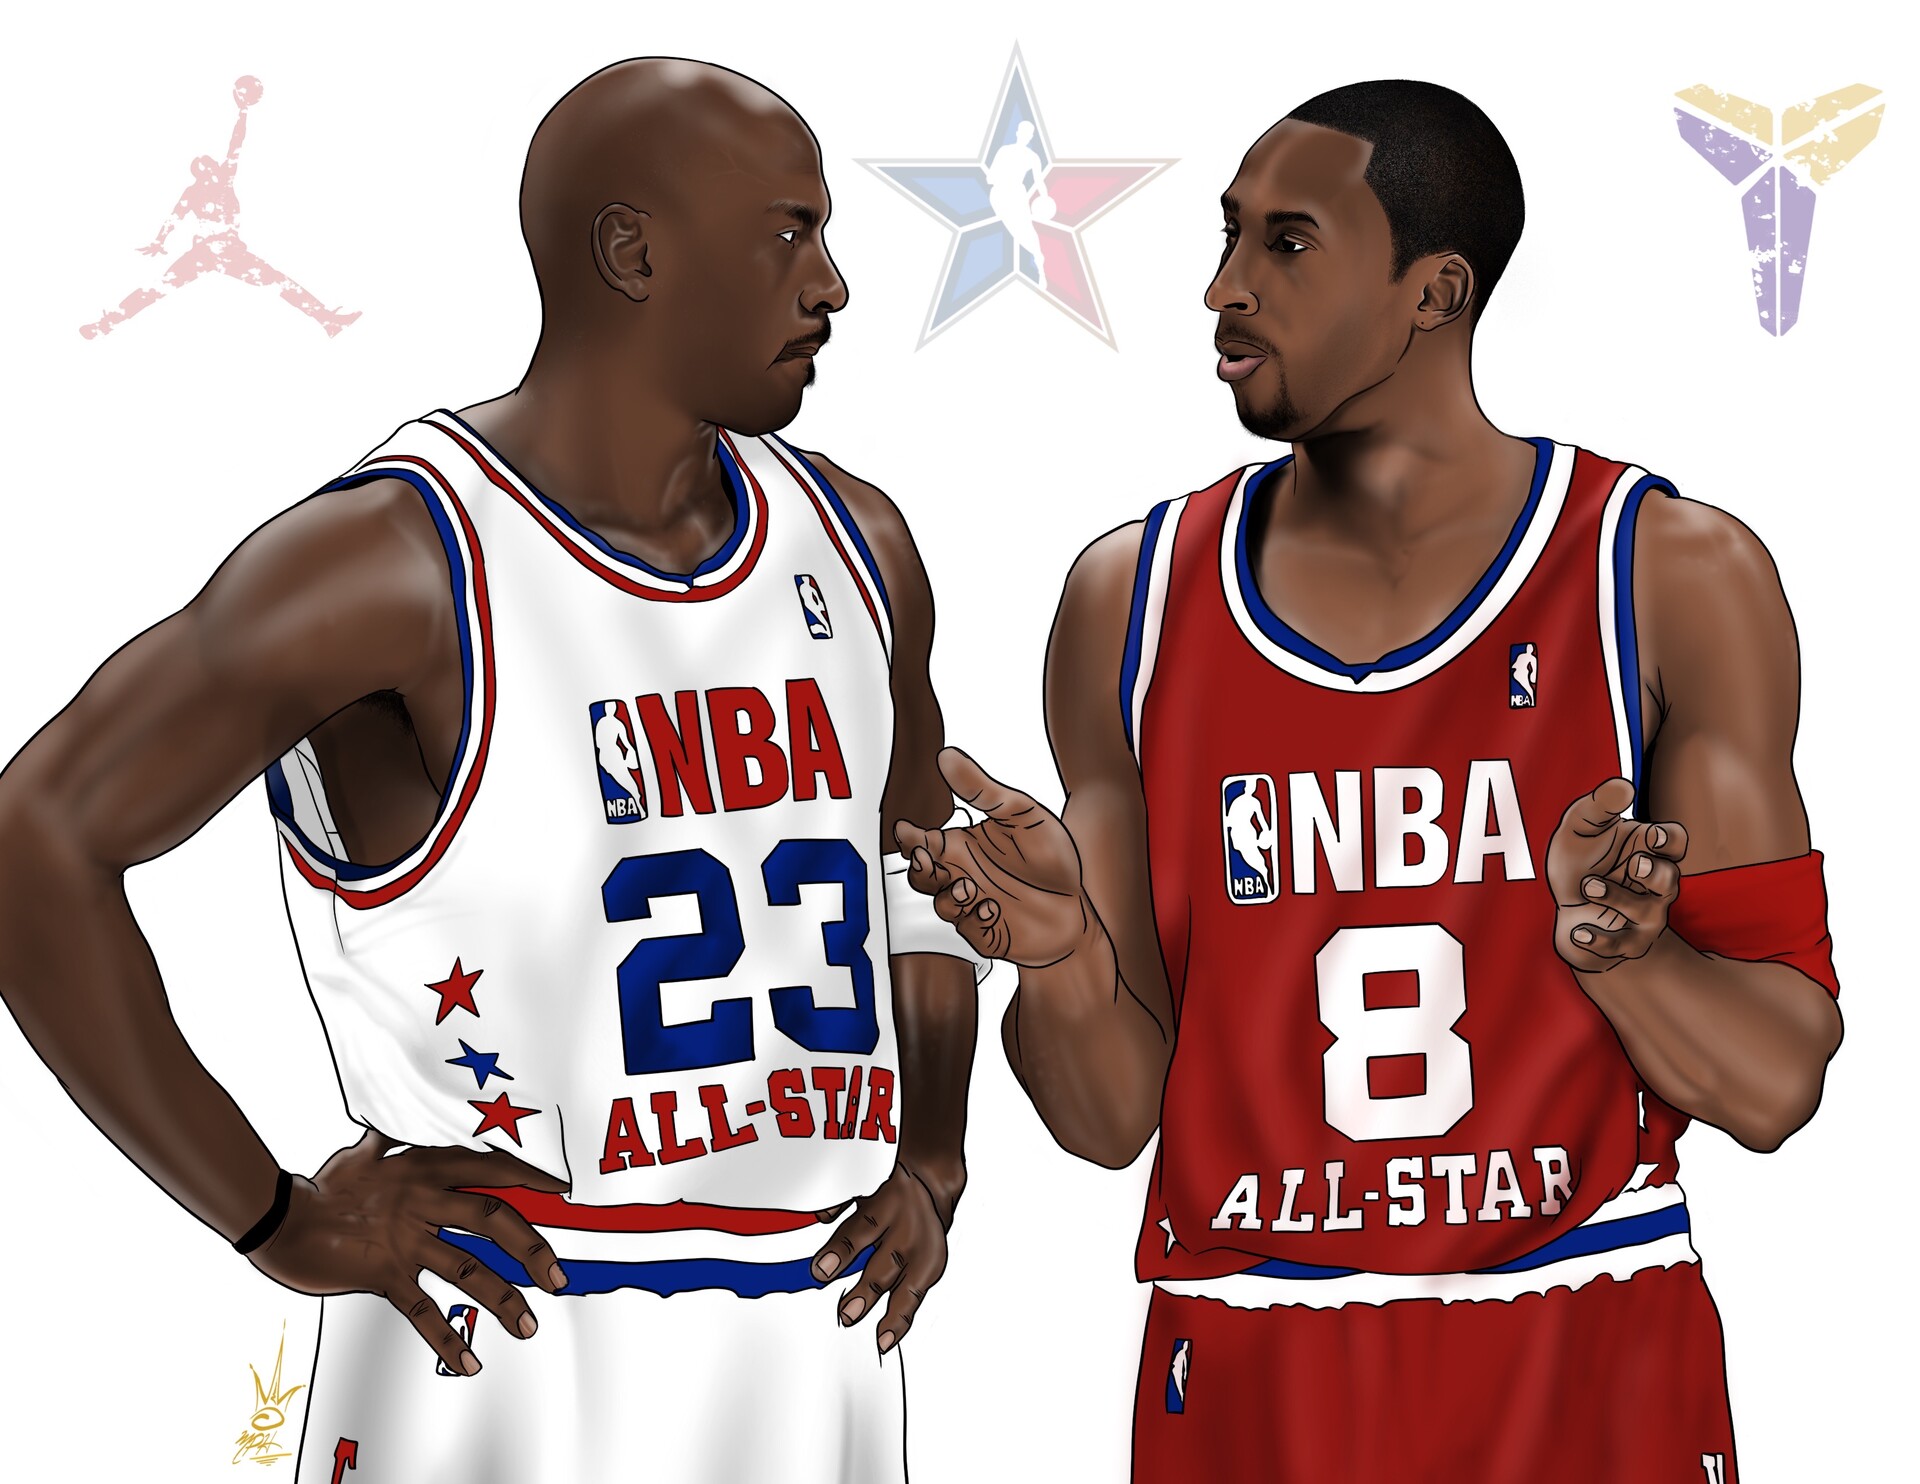 ArtStation - Jordan and Kobe 1997 All-Star game